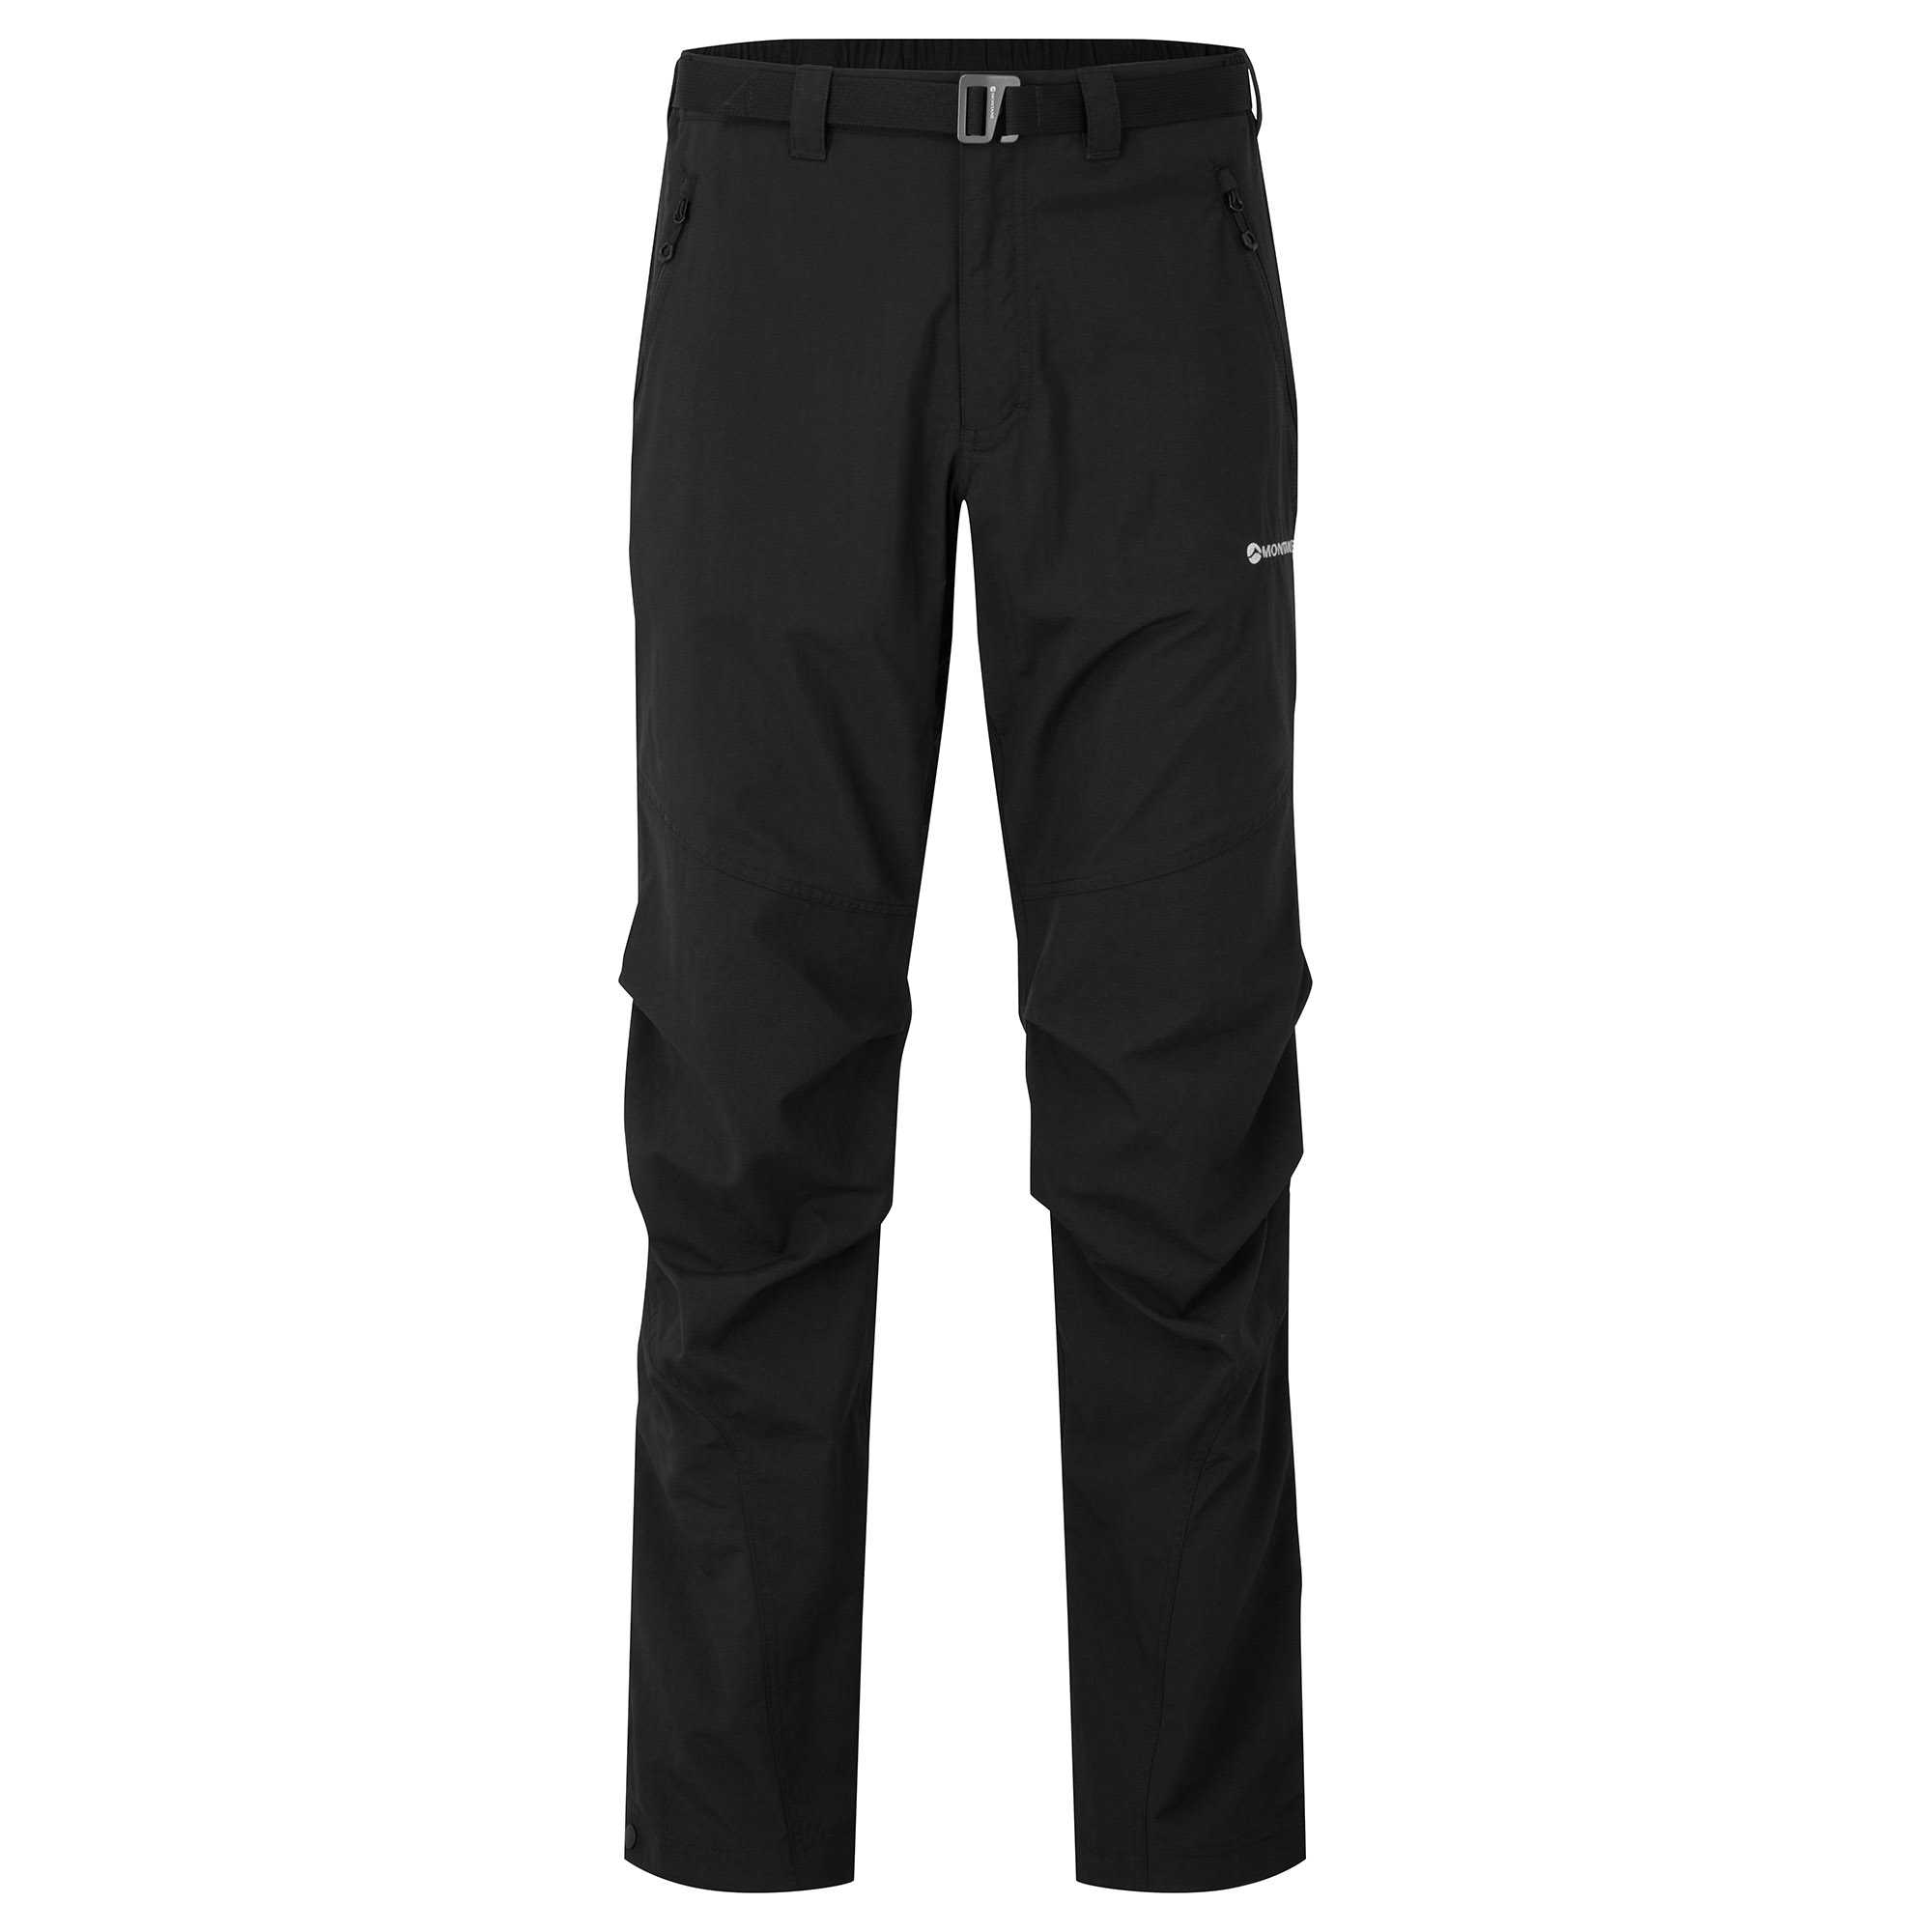 Montane pánské softshellové kalhoty Terra Pants - Prodloužené Nohavice Barva: black, Velikost: 34